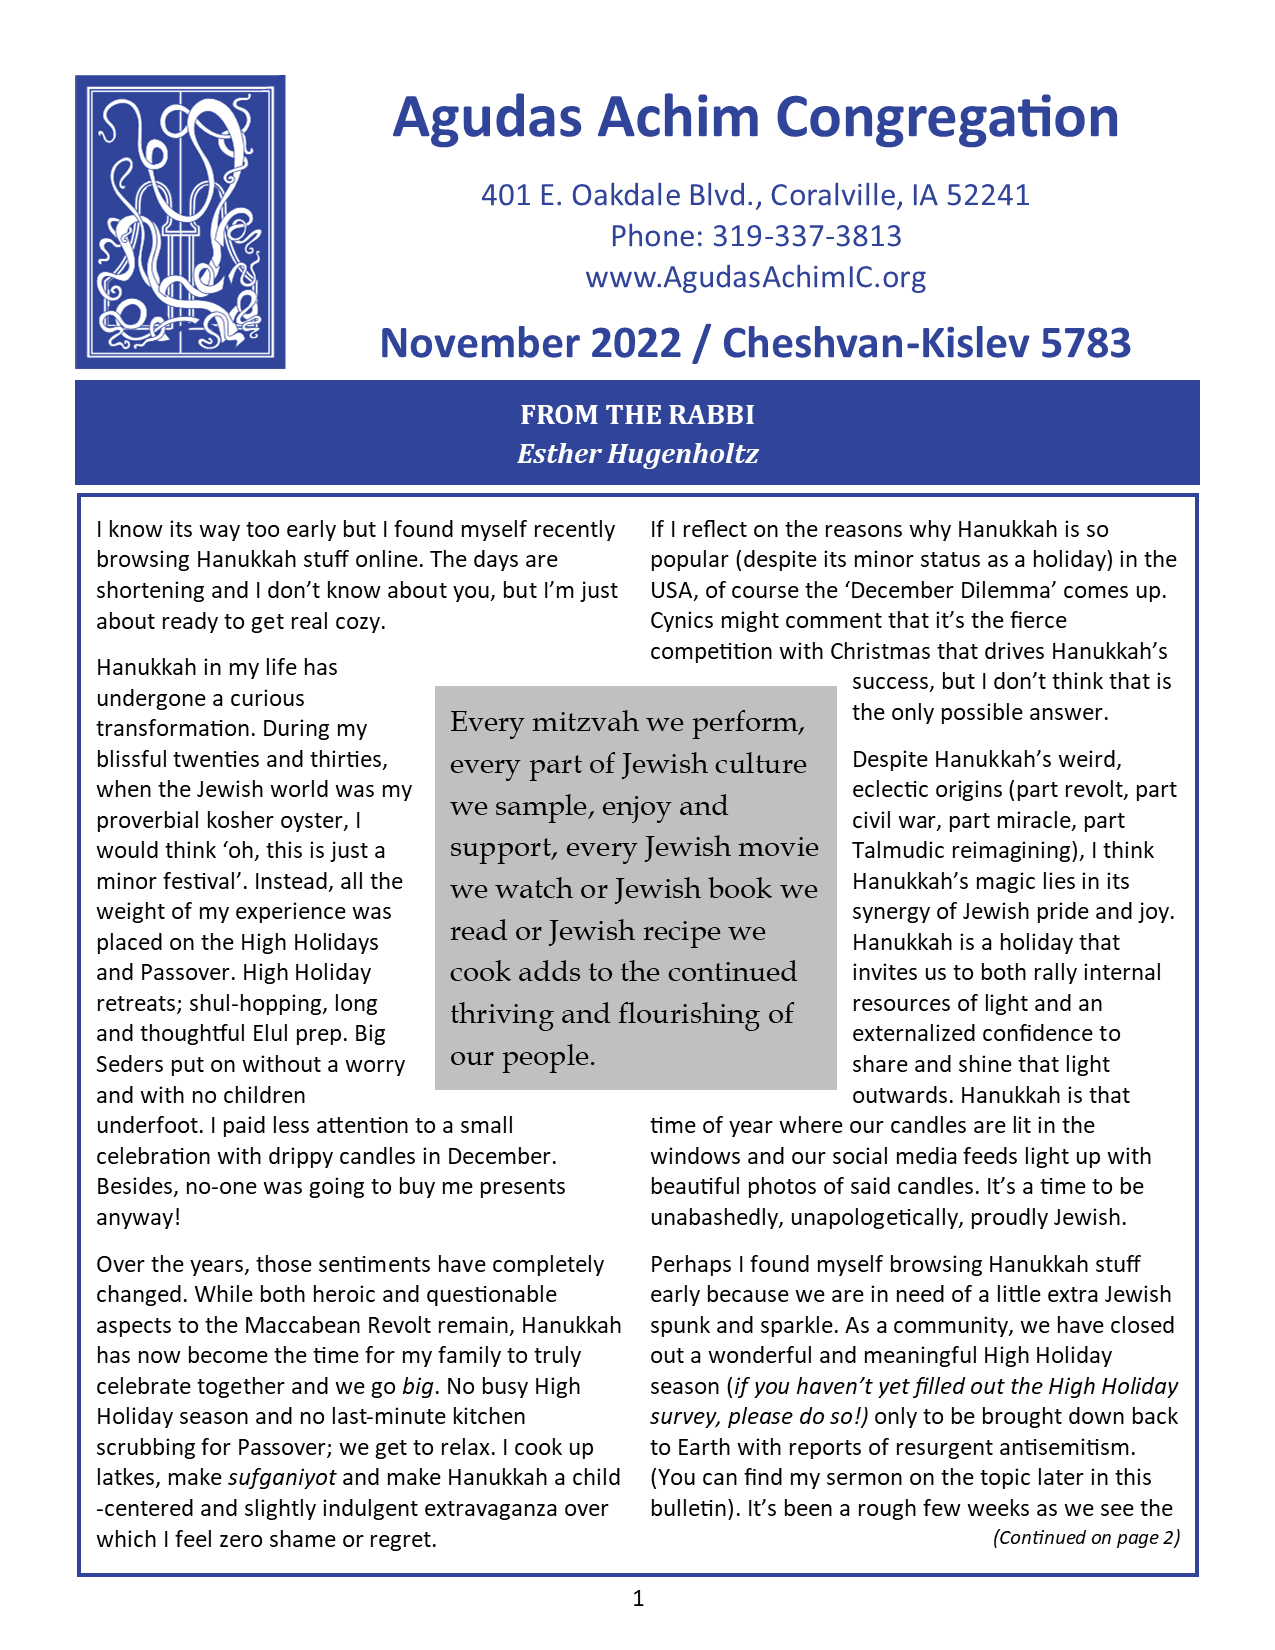 November 2022 Bulletin Cover